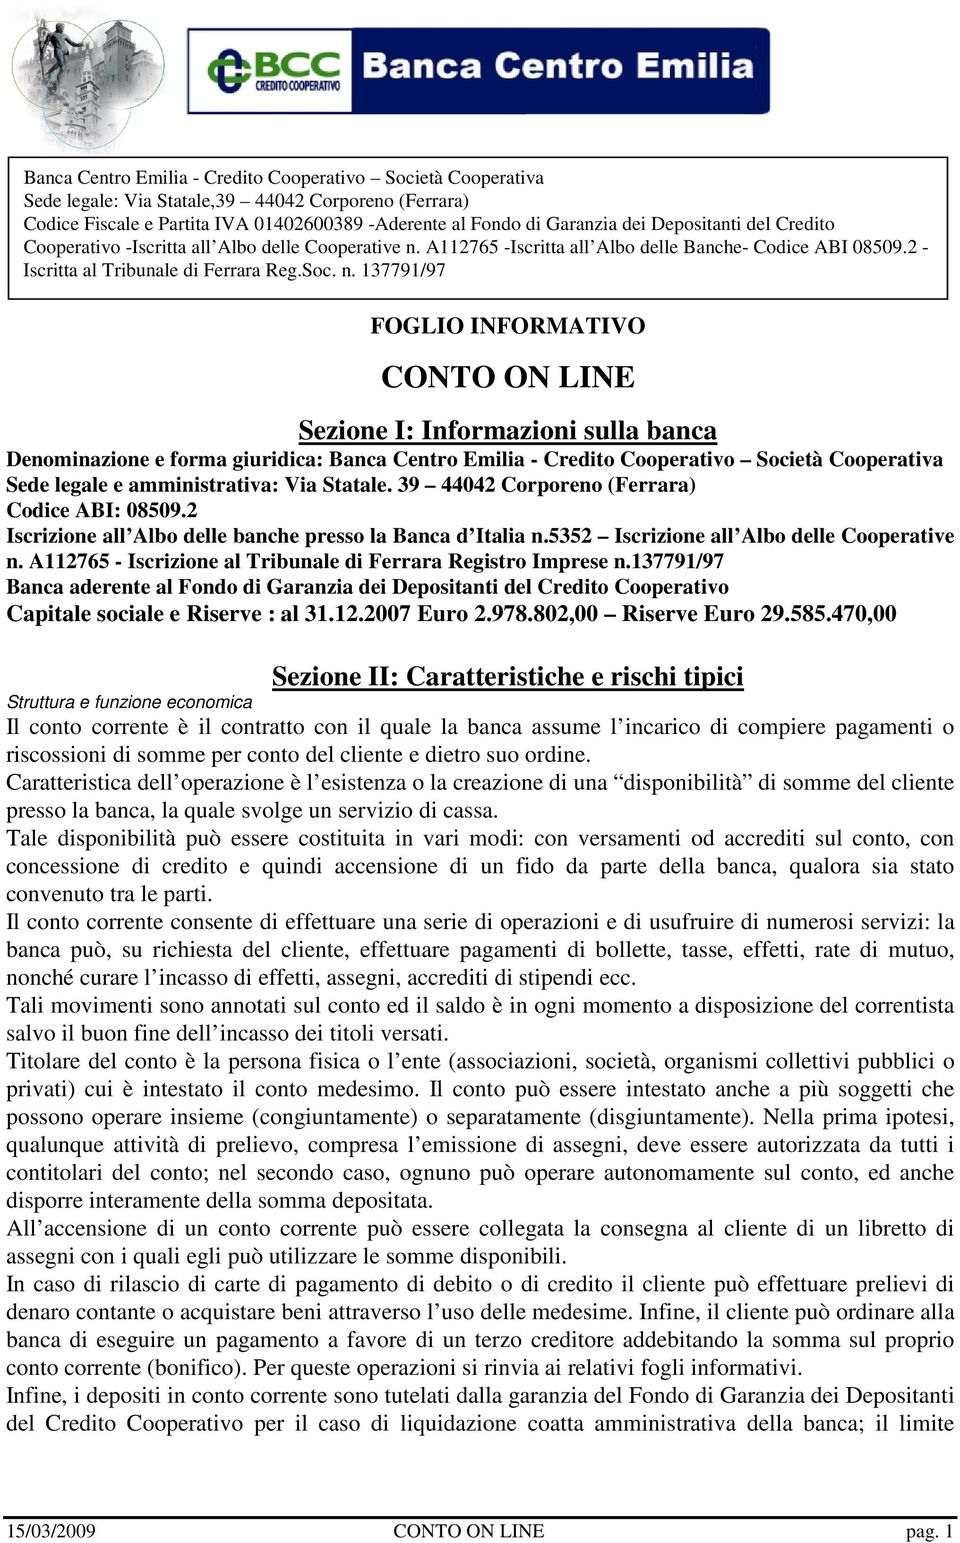 A112765 - Iscrizione al Tribunale di Ferrara Registro Imprese n.137791/97 Banca aderente al Fondo di Garanzia dei Depositanti del Credito Cooperativo Capitale sociale e Riserve : al 31.12.2007 Euro 2.